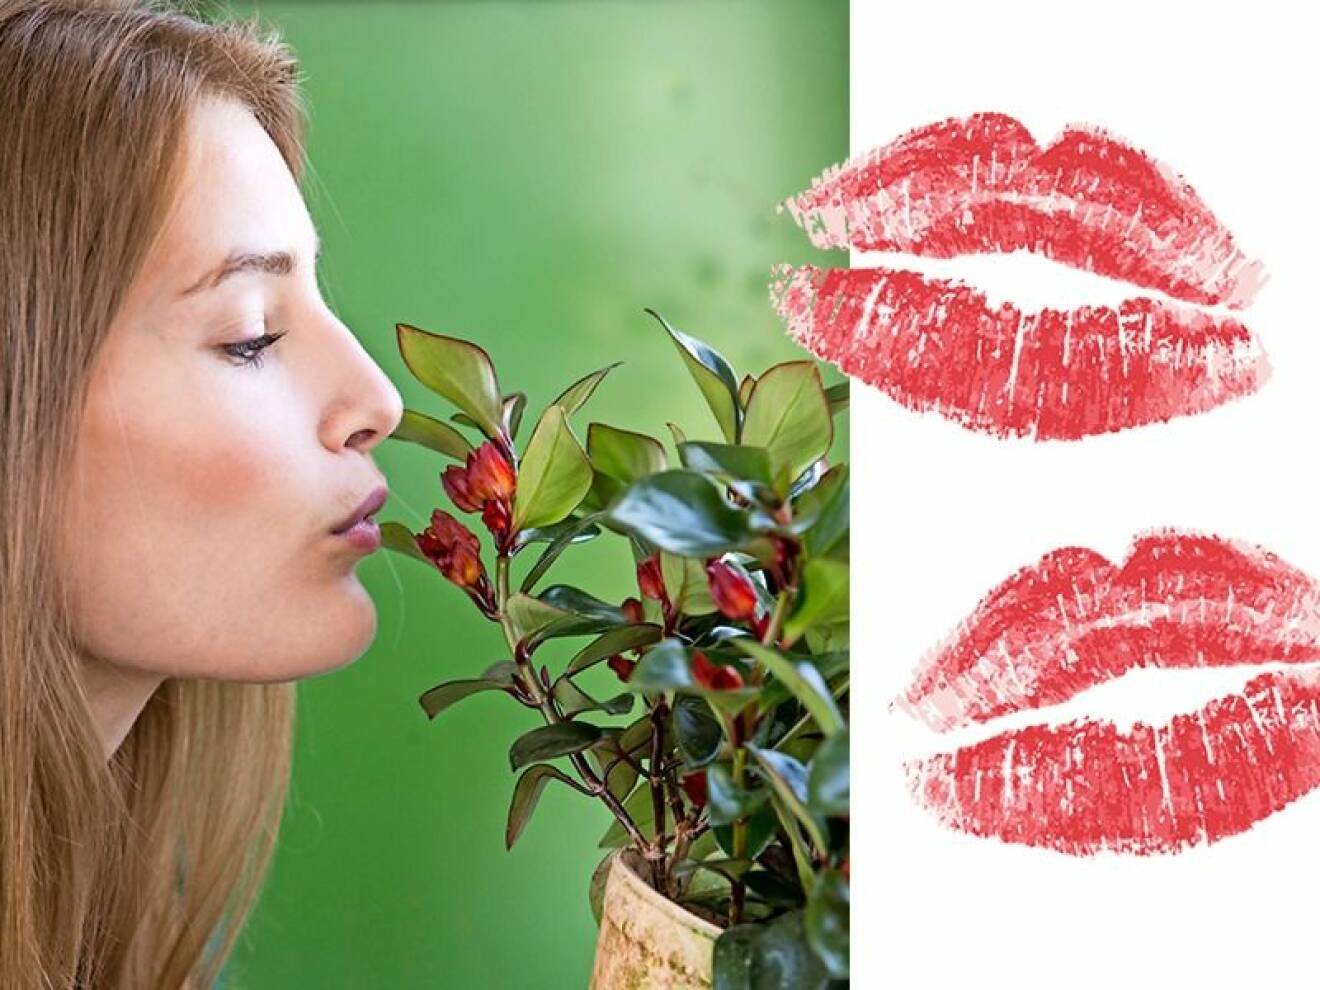 Krukväxten pussmun har fått sitt namn av att blommorna liknar en pussmun om man tittar riktigt nära på dem.